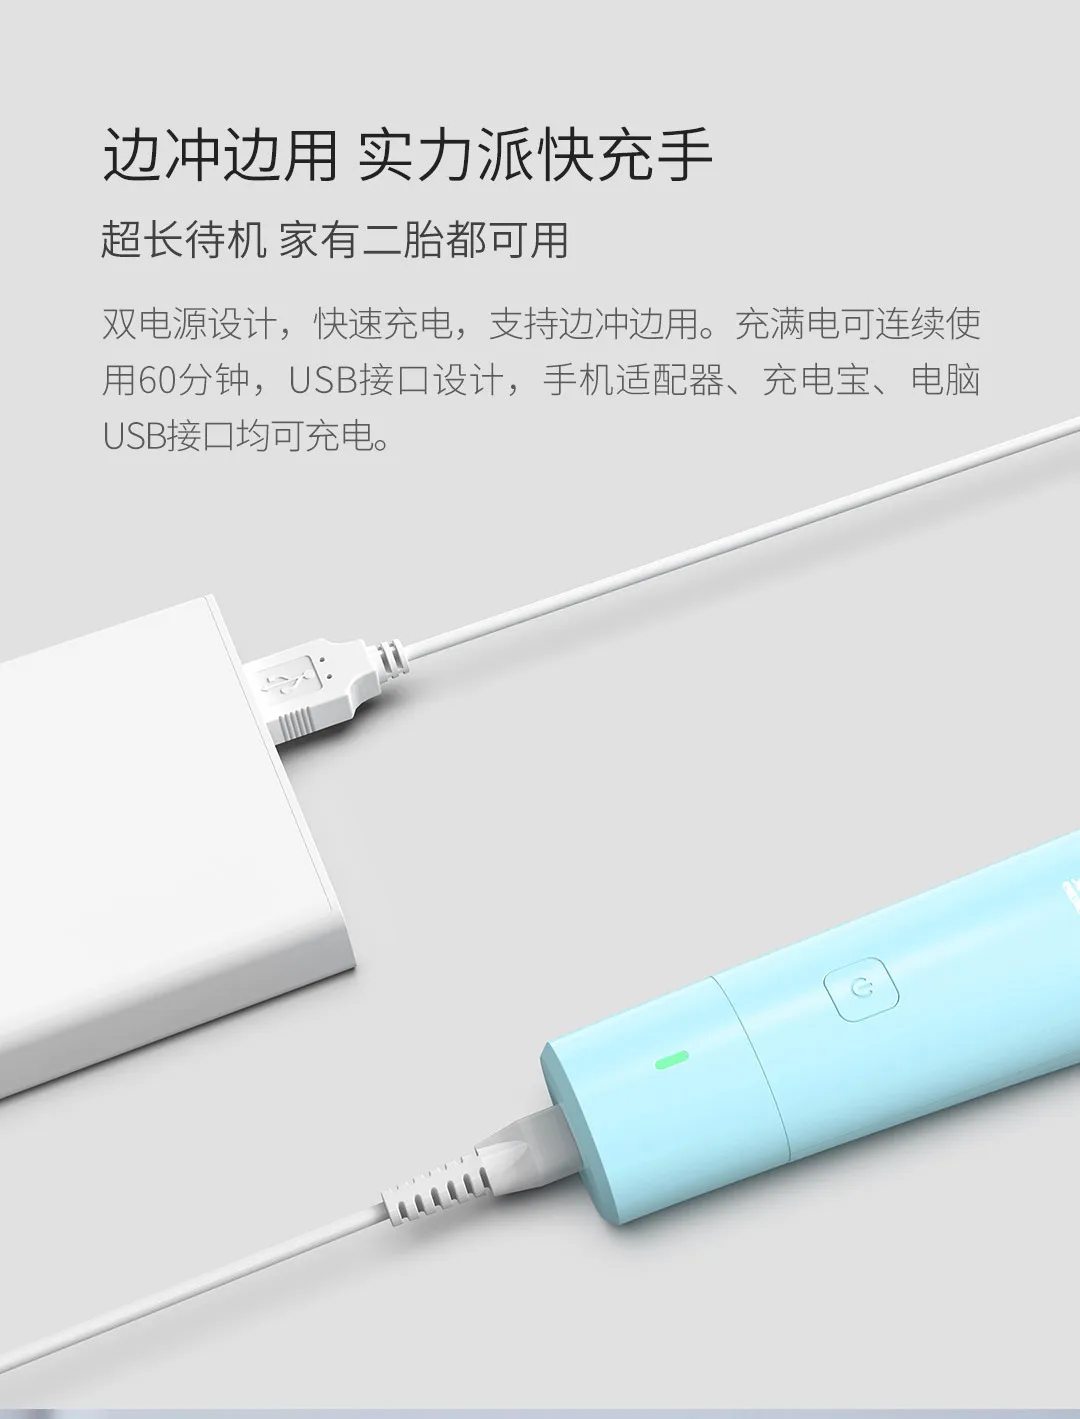 2 цвета Xiaomi Mijia Youpin Rushan детская Бесшумная машинка для стрижки волос Бесшумный Мотор R угол режущая головка IPX 7 водонепроницаемый